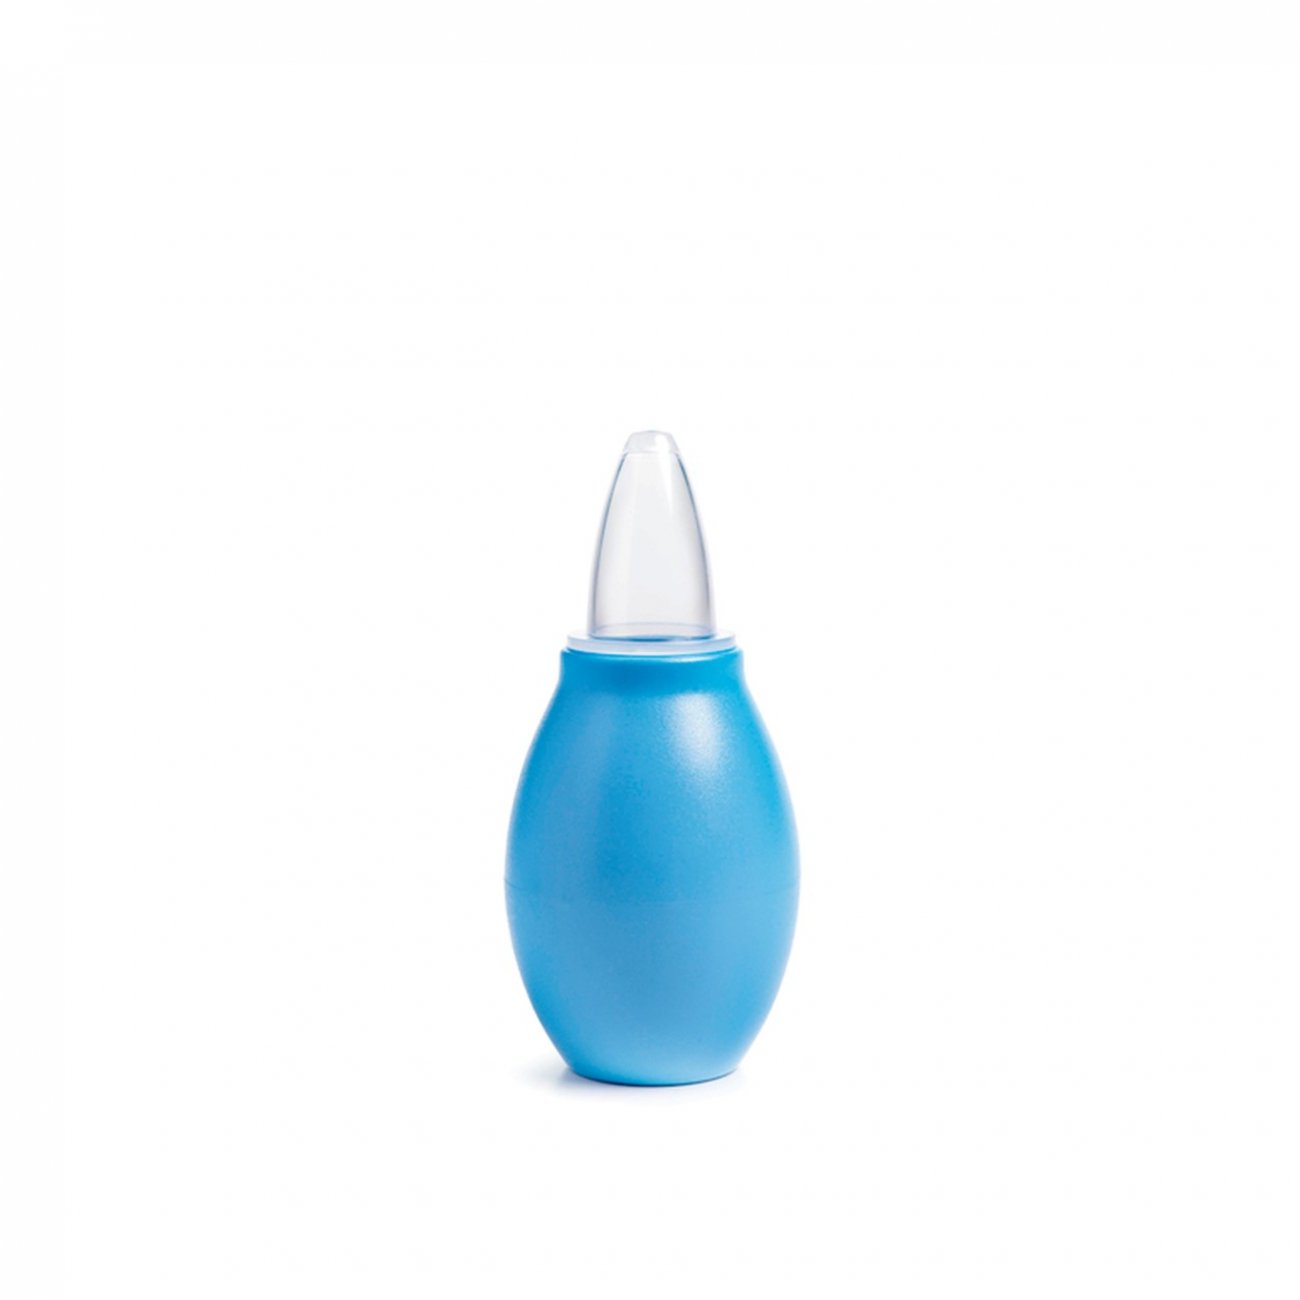 Bezighouden Uittrekken Stewart Island Kopen Suavinex Nasal Aspirator BPA Free +0m x1 · Nederland